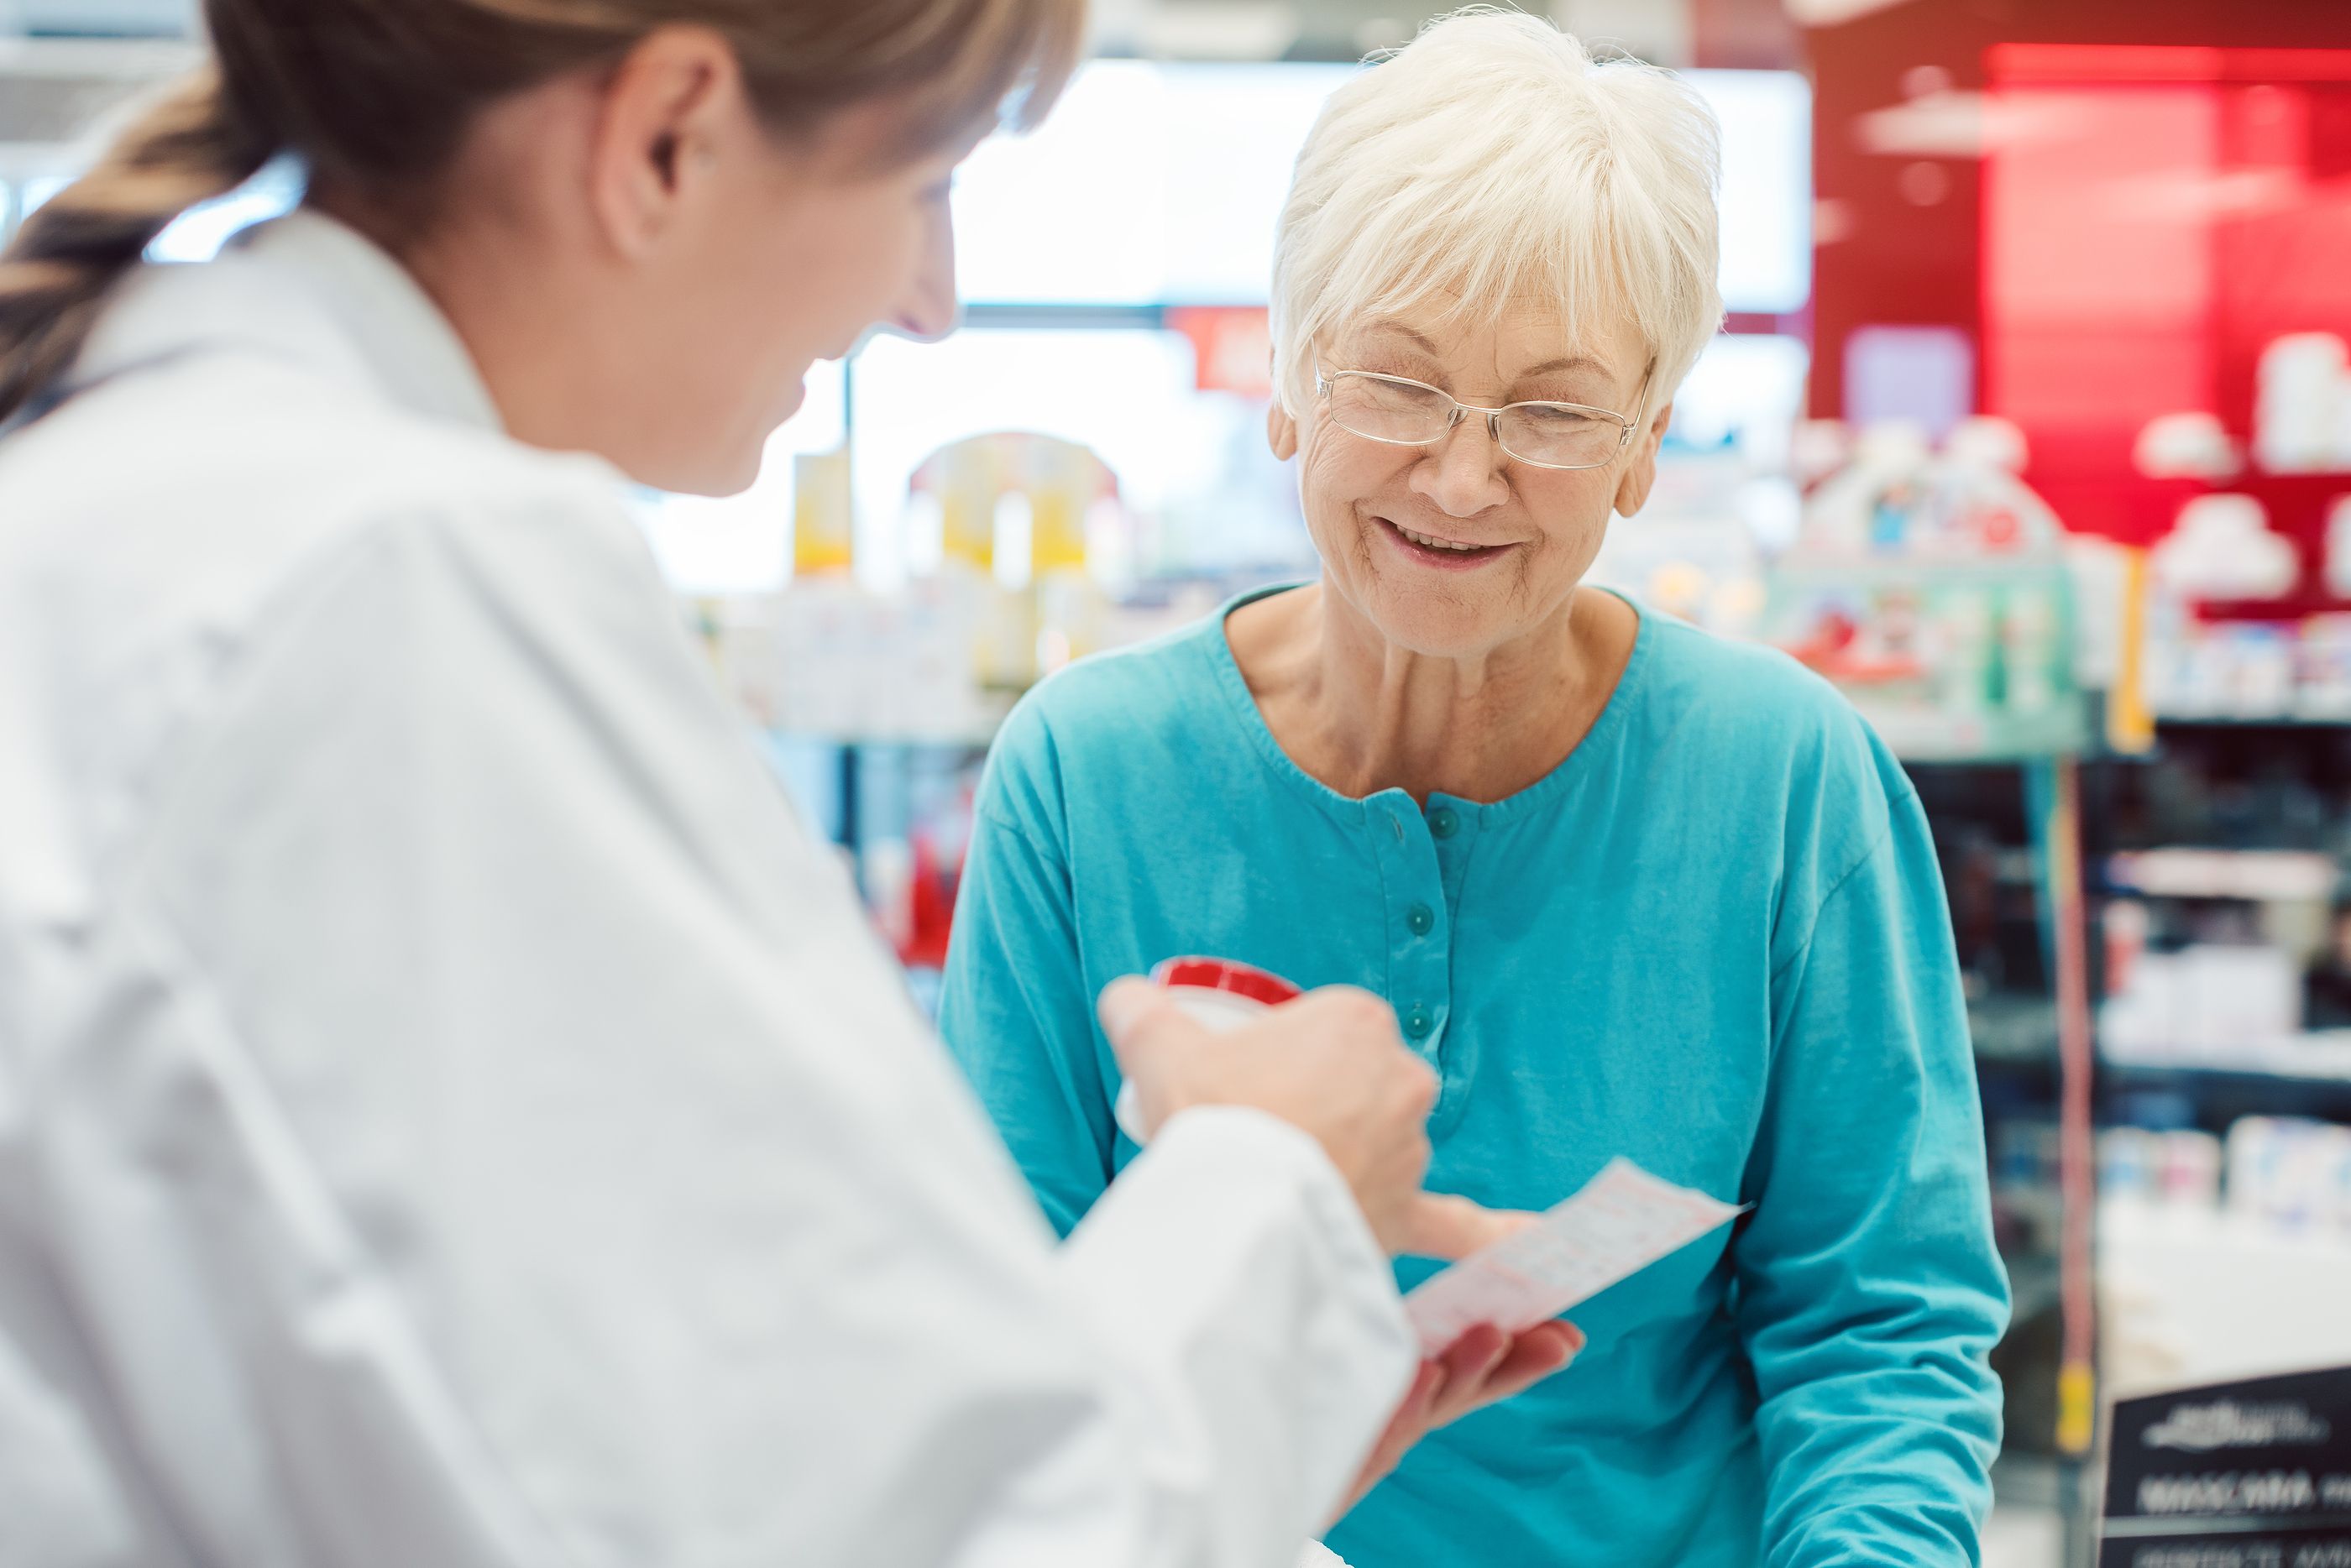 Las farmacias de Aragón ayudarán a detectar la fragilidad en los mayores a través de un test. Foto: Bigstock